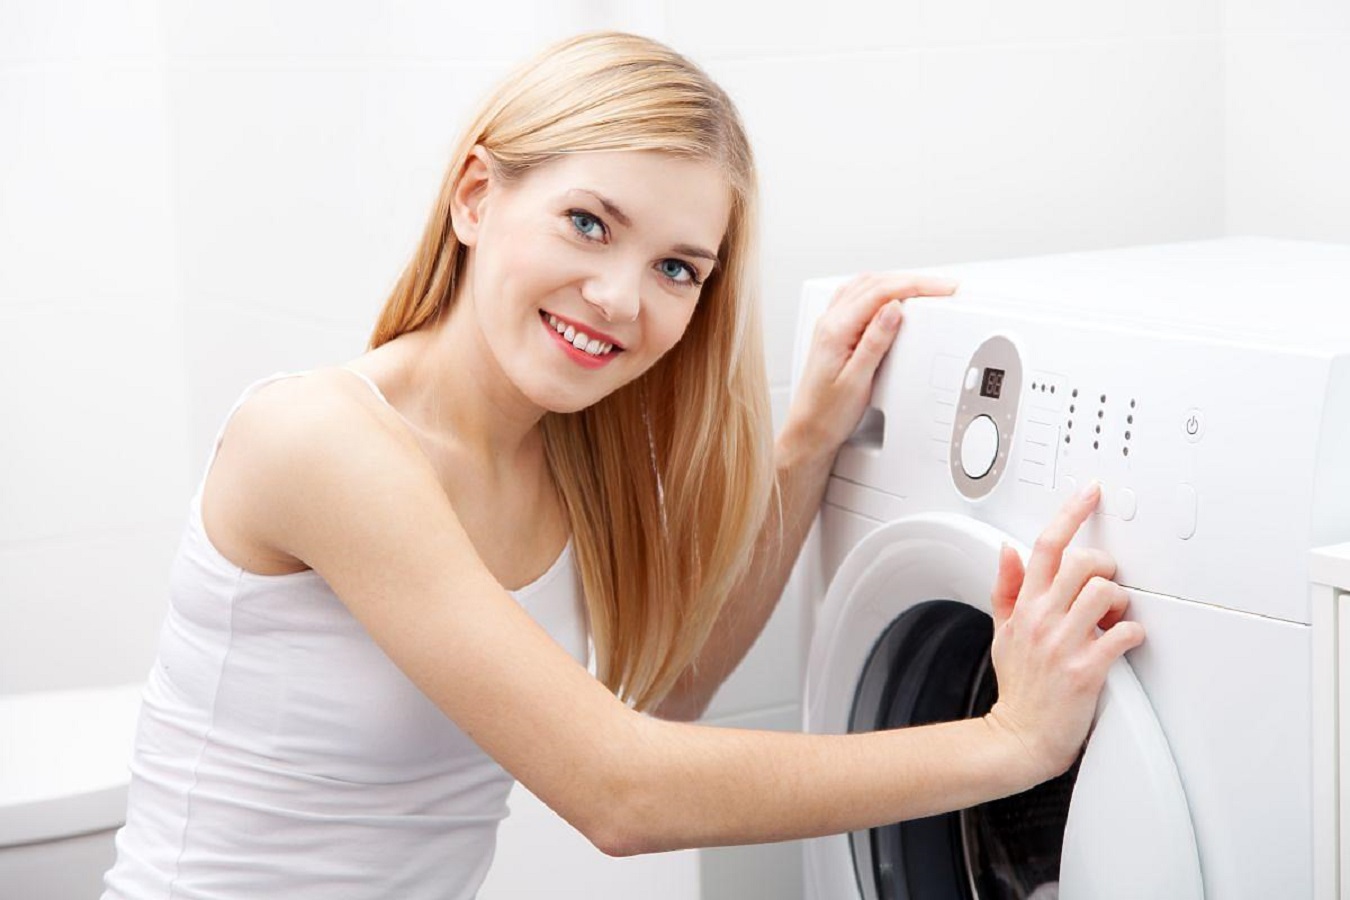 Simboli della Lavatrice - Imparare Cosa Significano i Simboli della Lavatrice